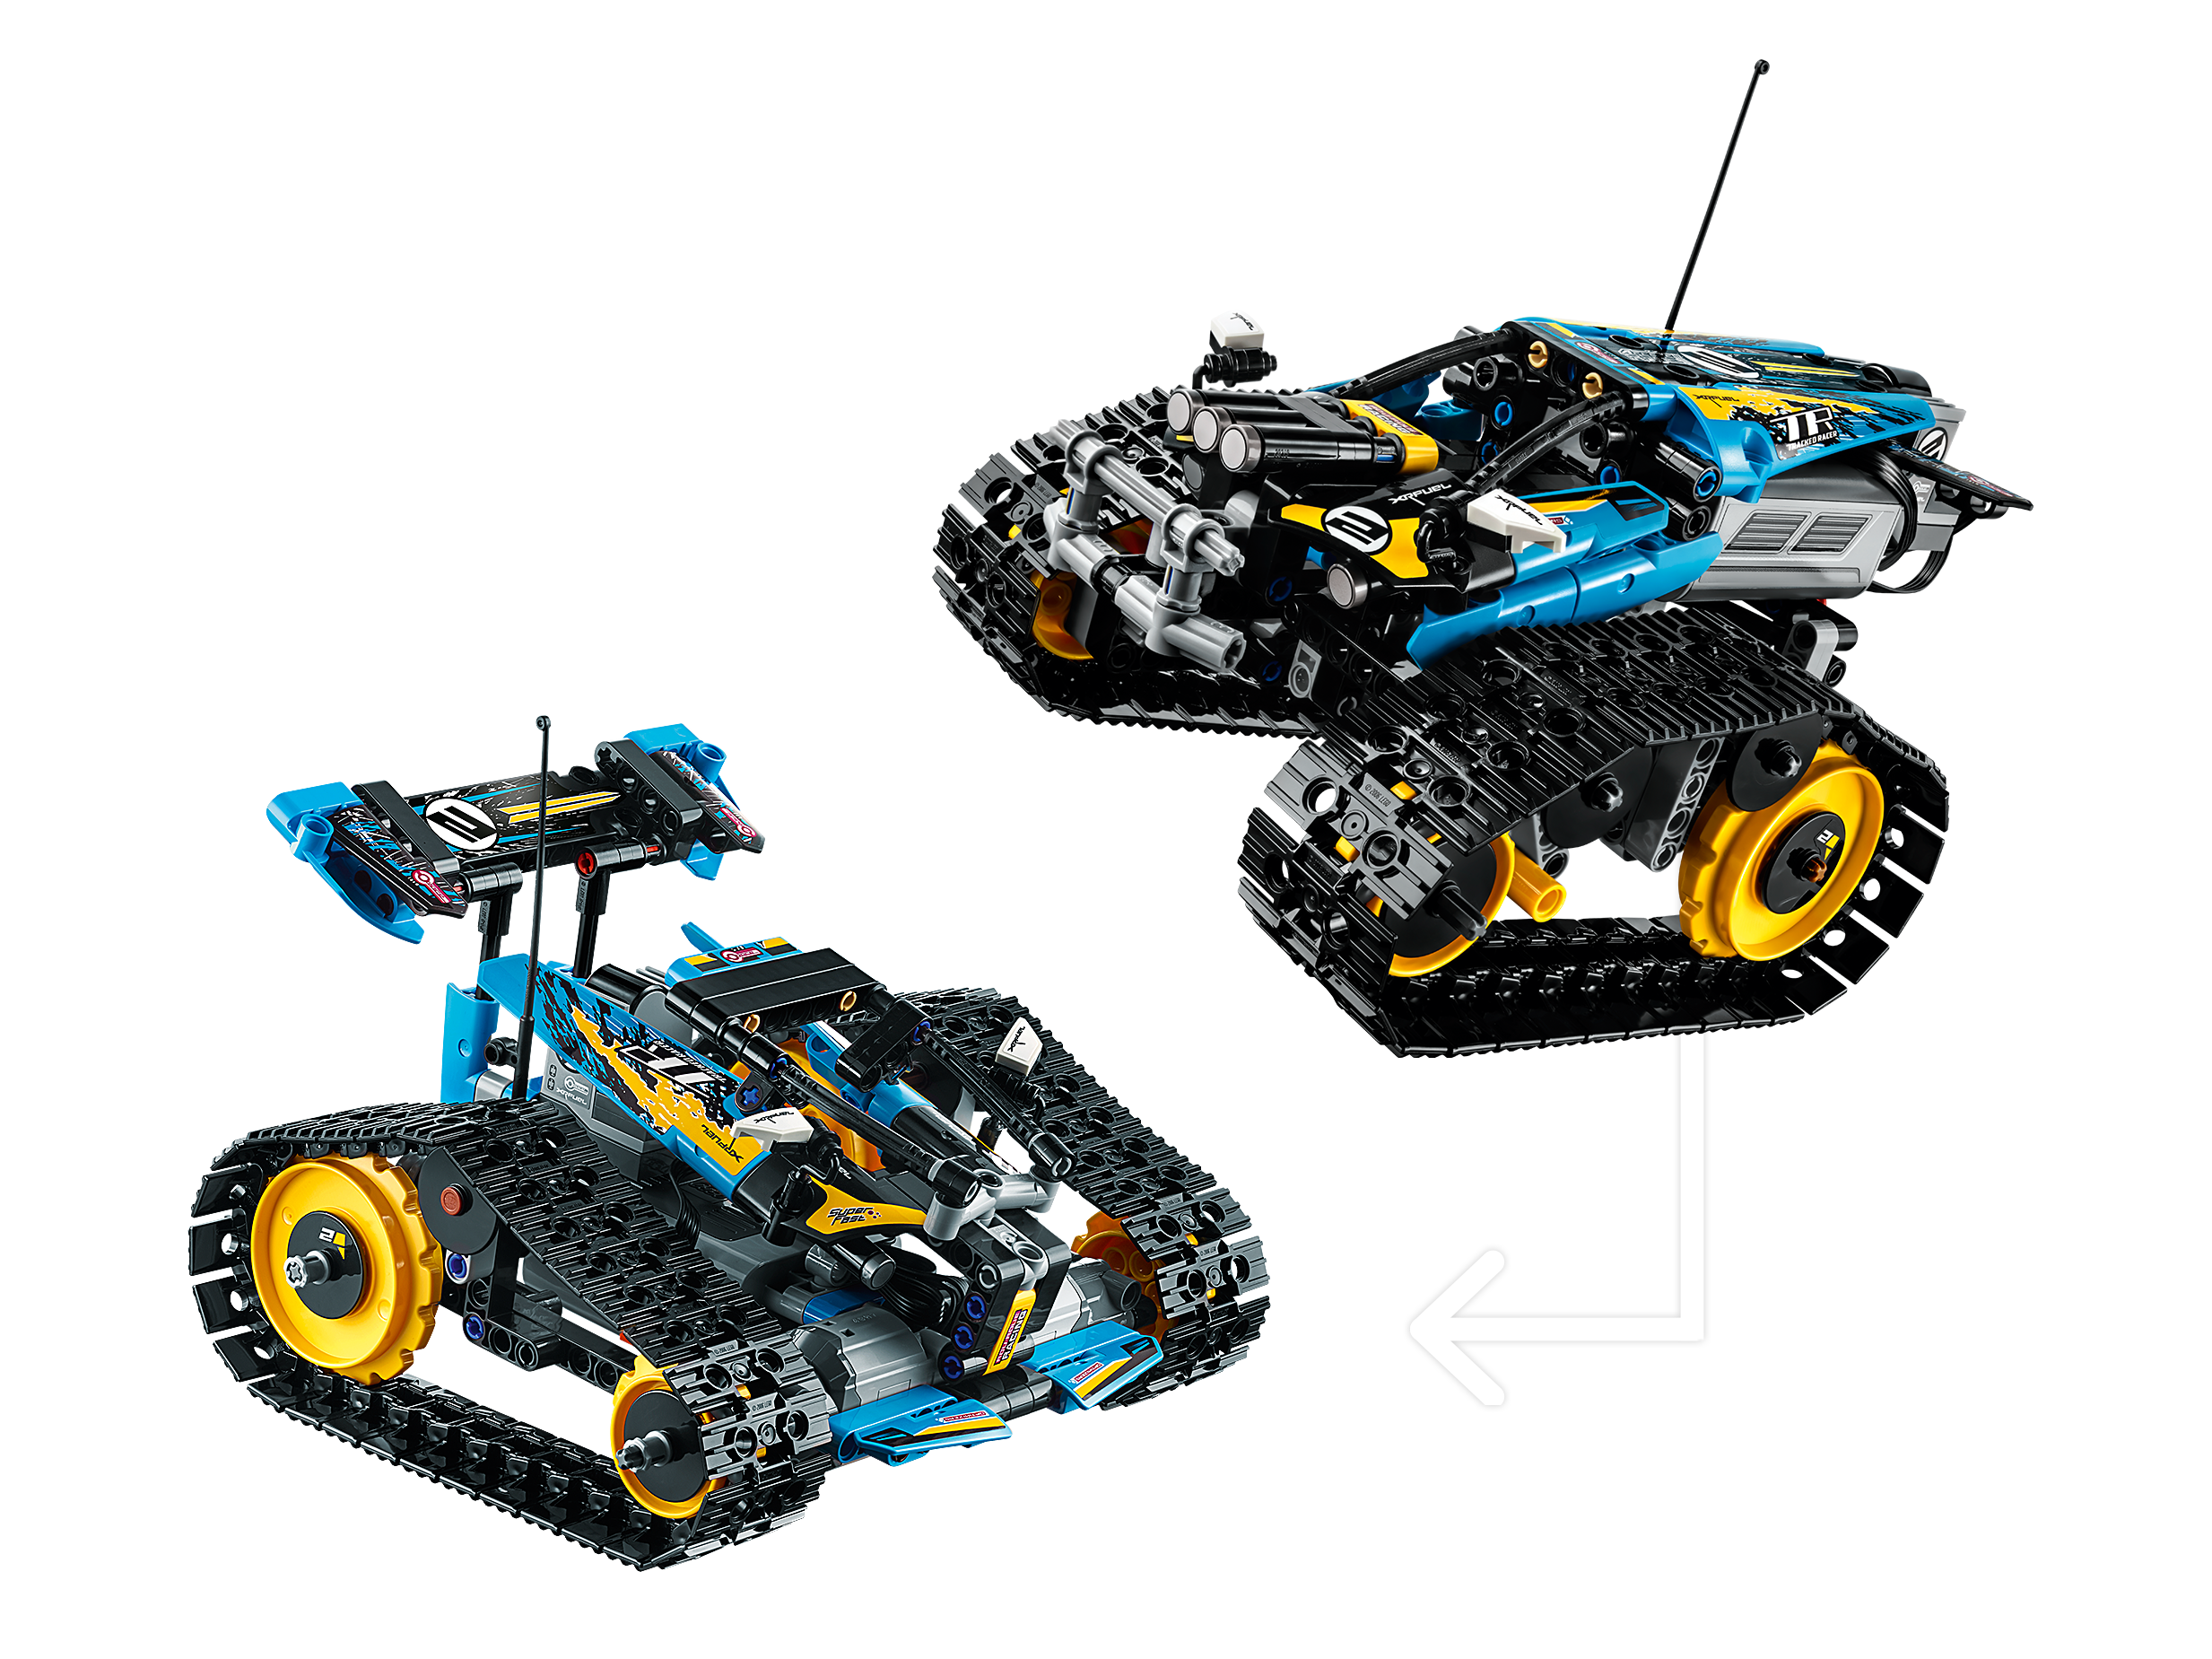 Lego Lego ® Technic 42095 Le bolide télécommandé